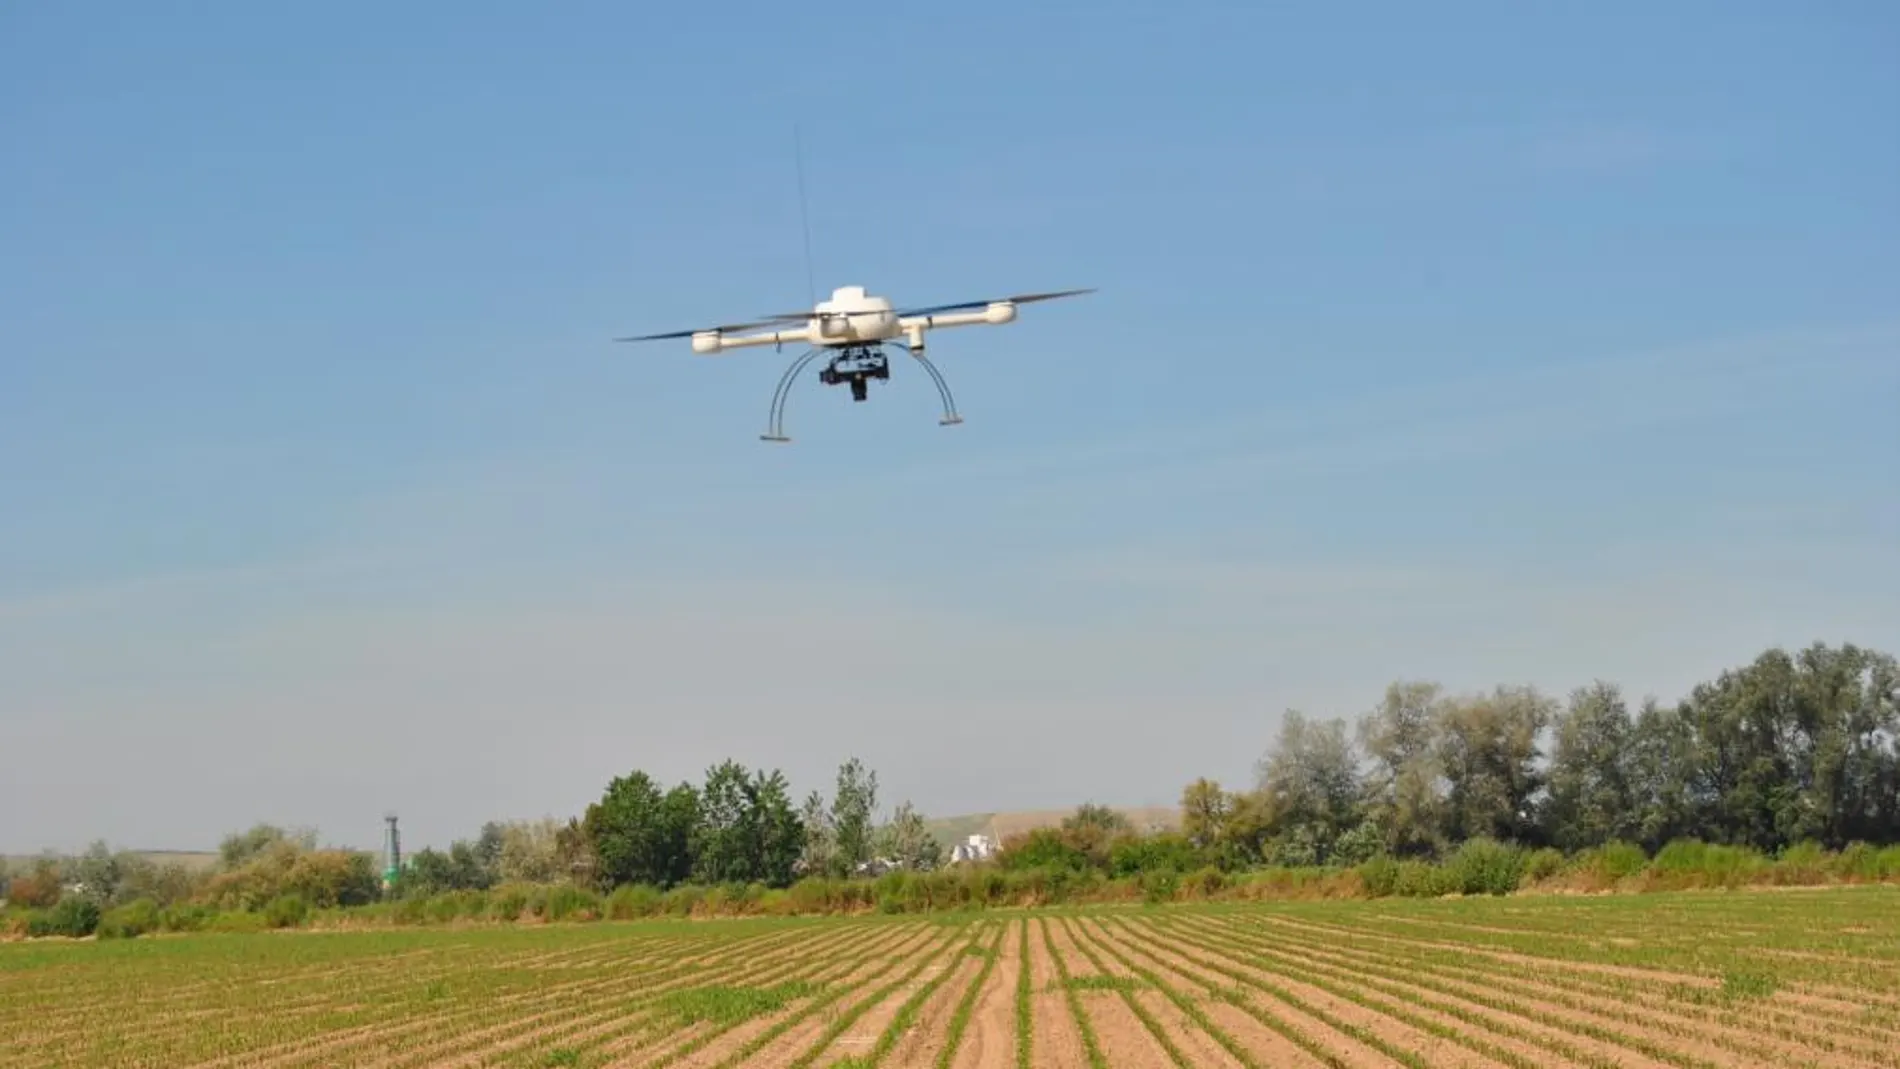 Uno de los drones sobrevolando un campo de maíz